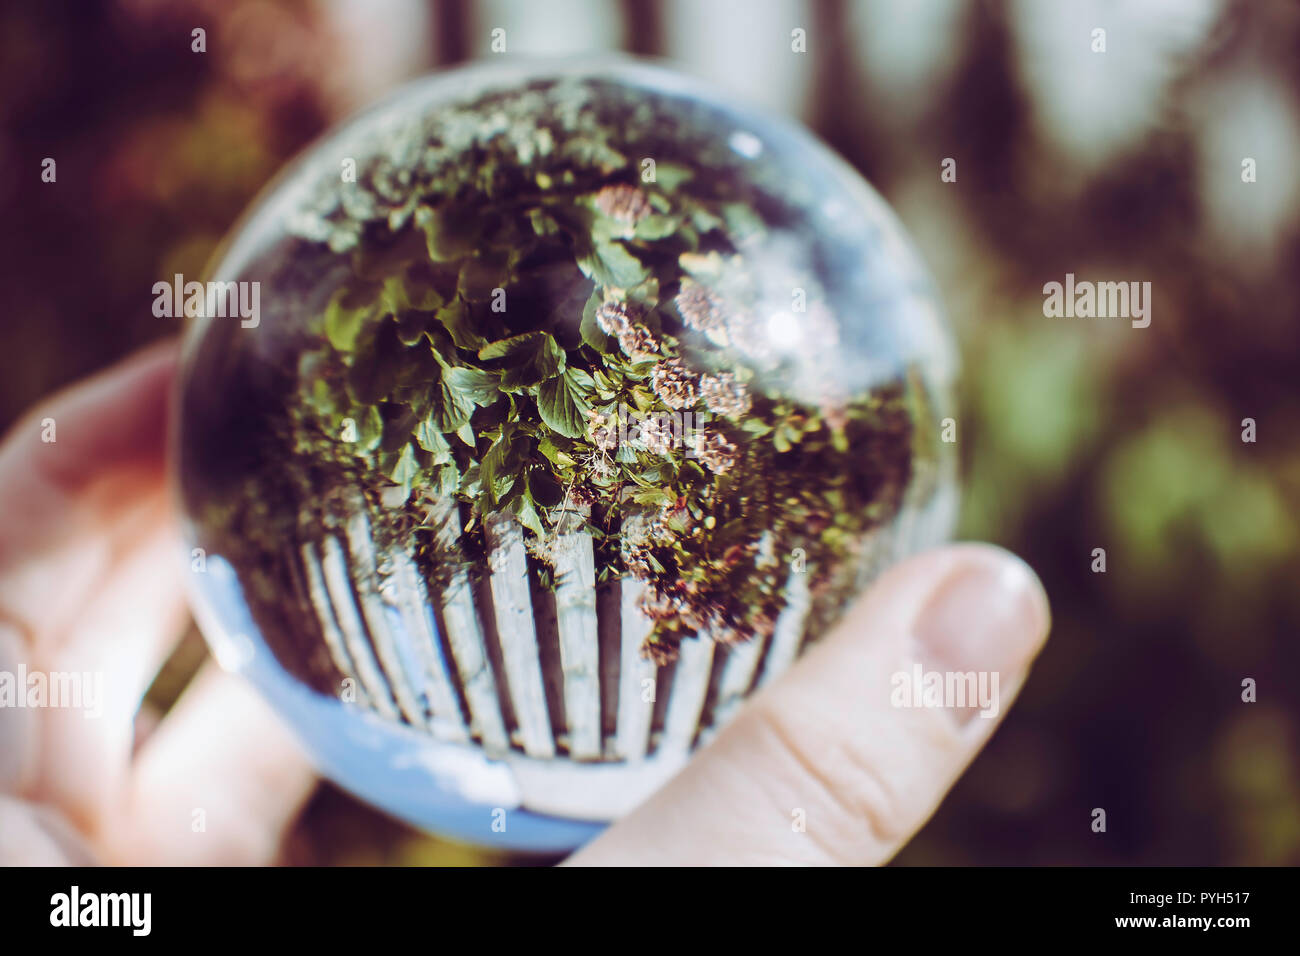 Englischer Garten durch einen Kristall Fotografie ball gesehen Stockfoto